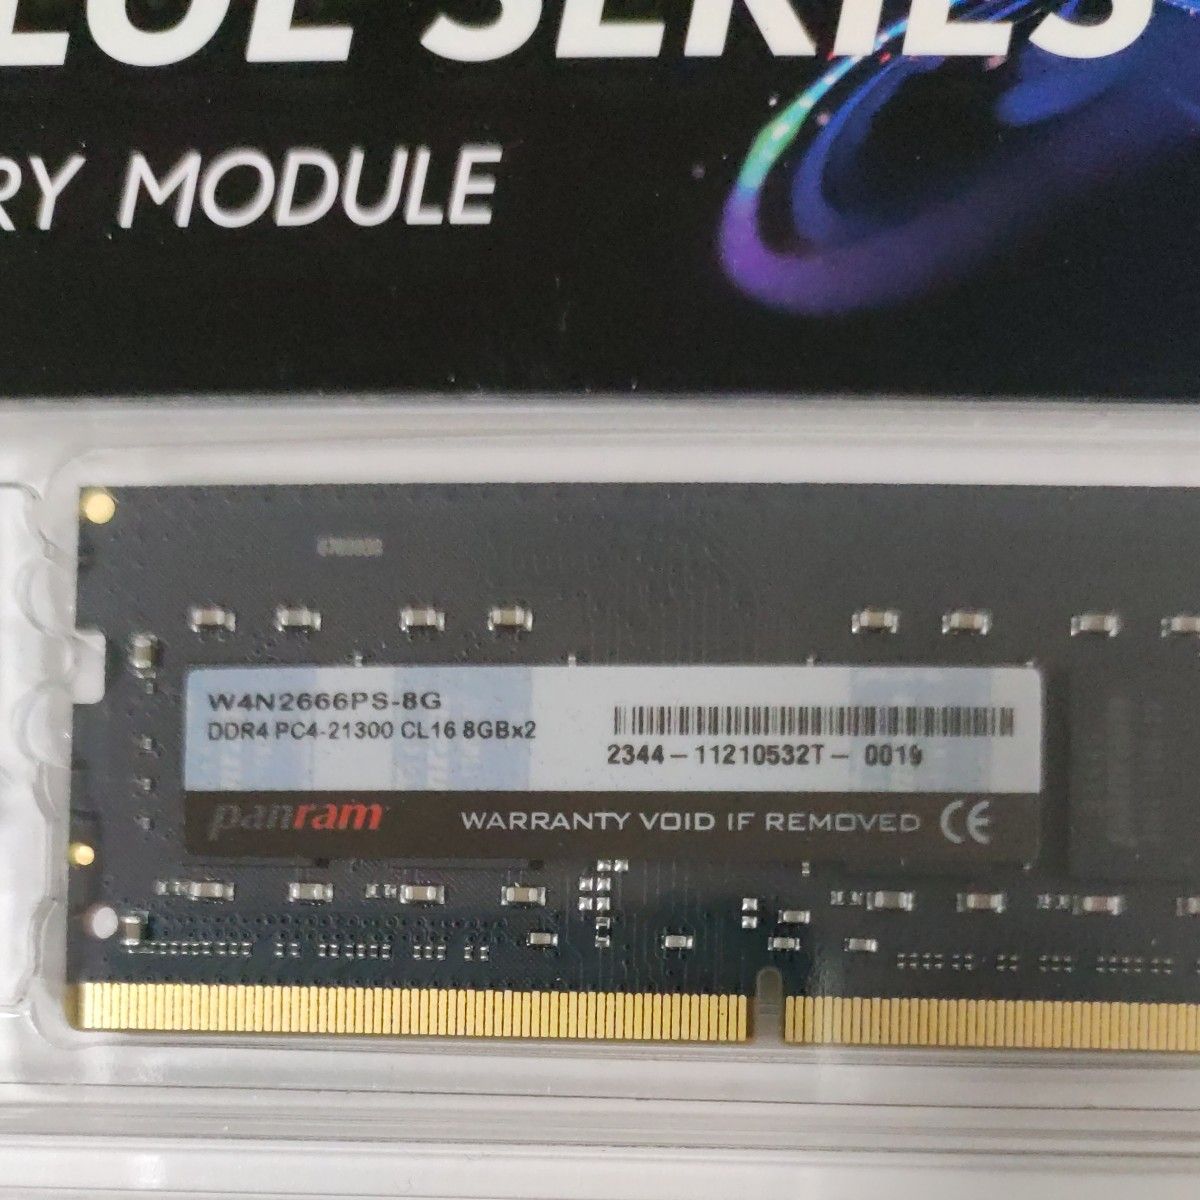 ［月末まで］新品 ノート用増設メモリ【16GB KIT】SODIMM CFD Panram W4N2666PS-8G 　DDR4